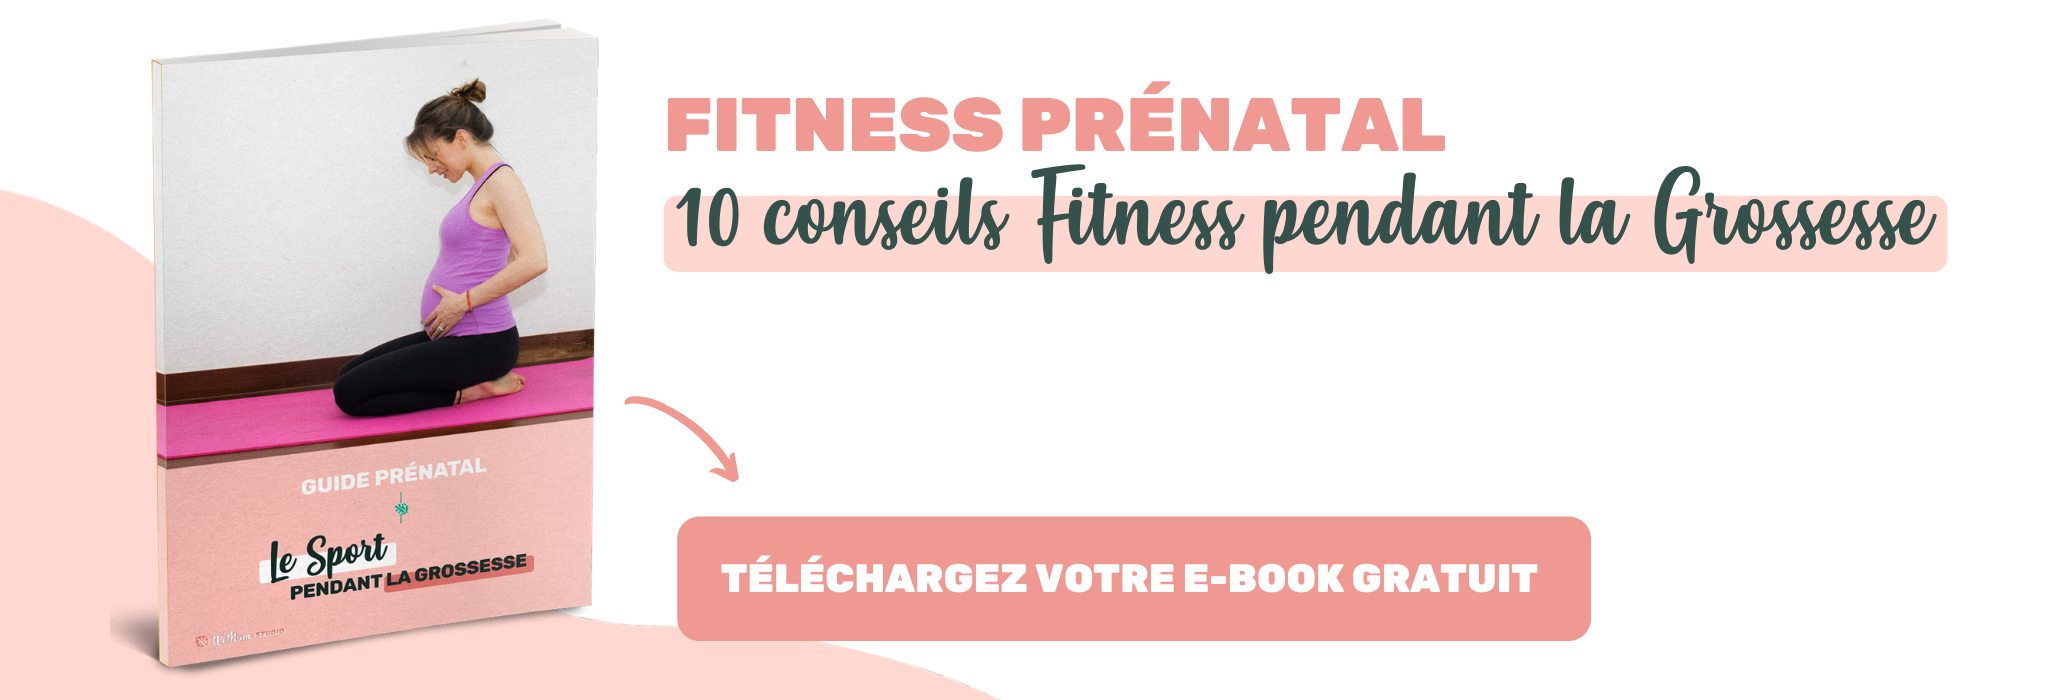 Pour une pratique sportive adaptée & en toute sécurité, je vous invite à télécharger votre ebook gratuit : "10 conseils fitness pendant la grossesse".